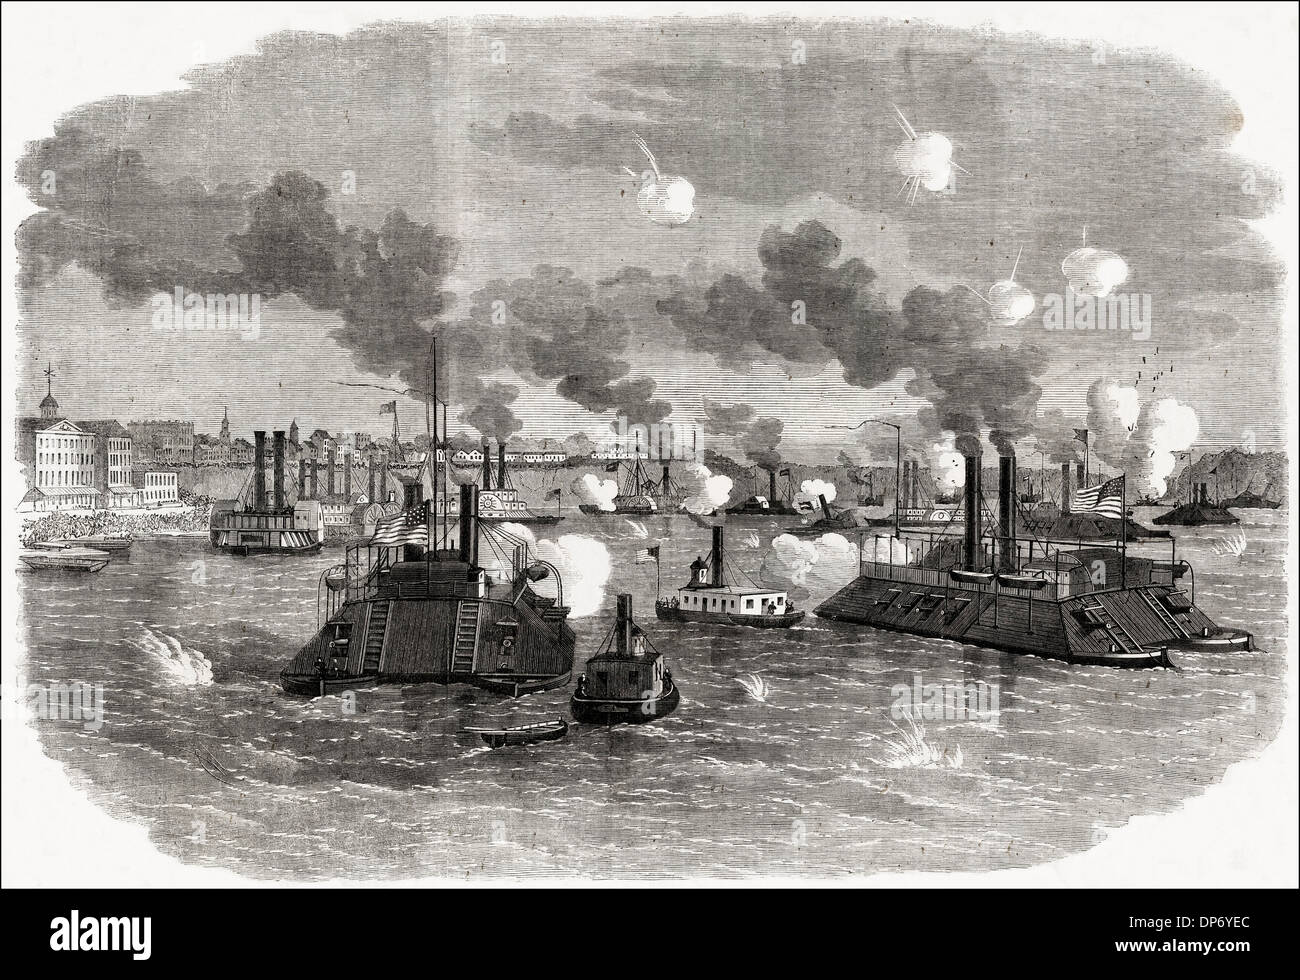 Guerre civile américaine 1861 - 1865 Destruction de la flottille confédérée sur la rivière Mississippi Memphis Tennessee hors de nous. La gravure sur bois victorien vers 1862 Banque D'Images